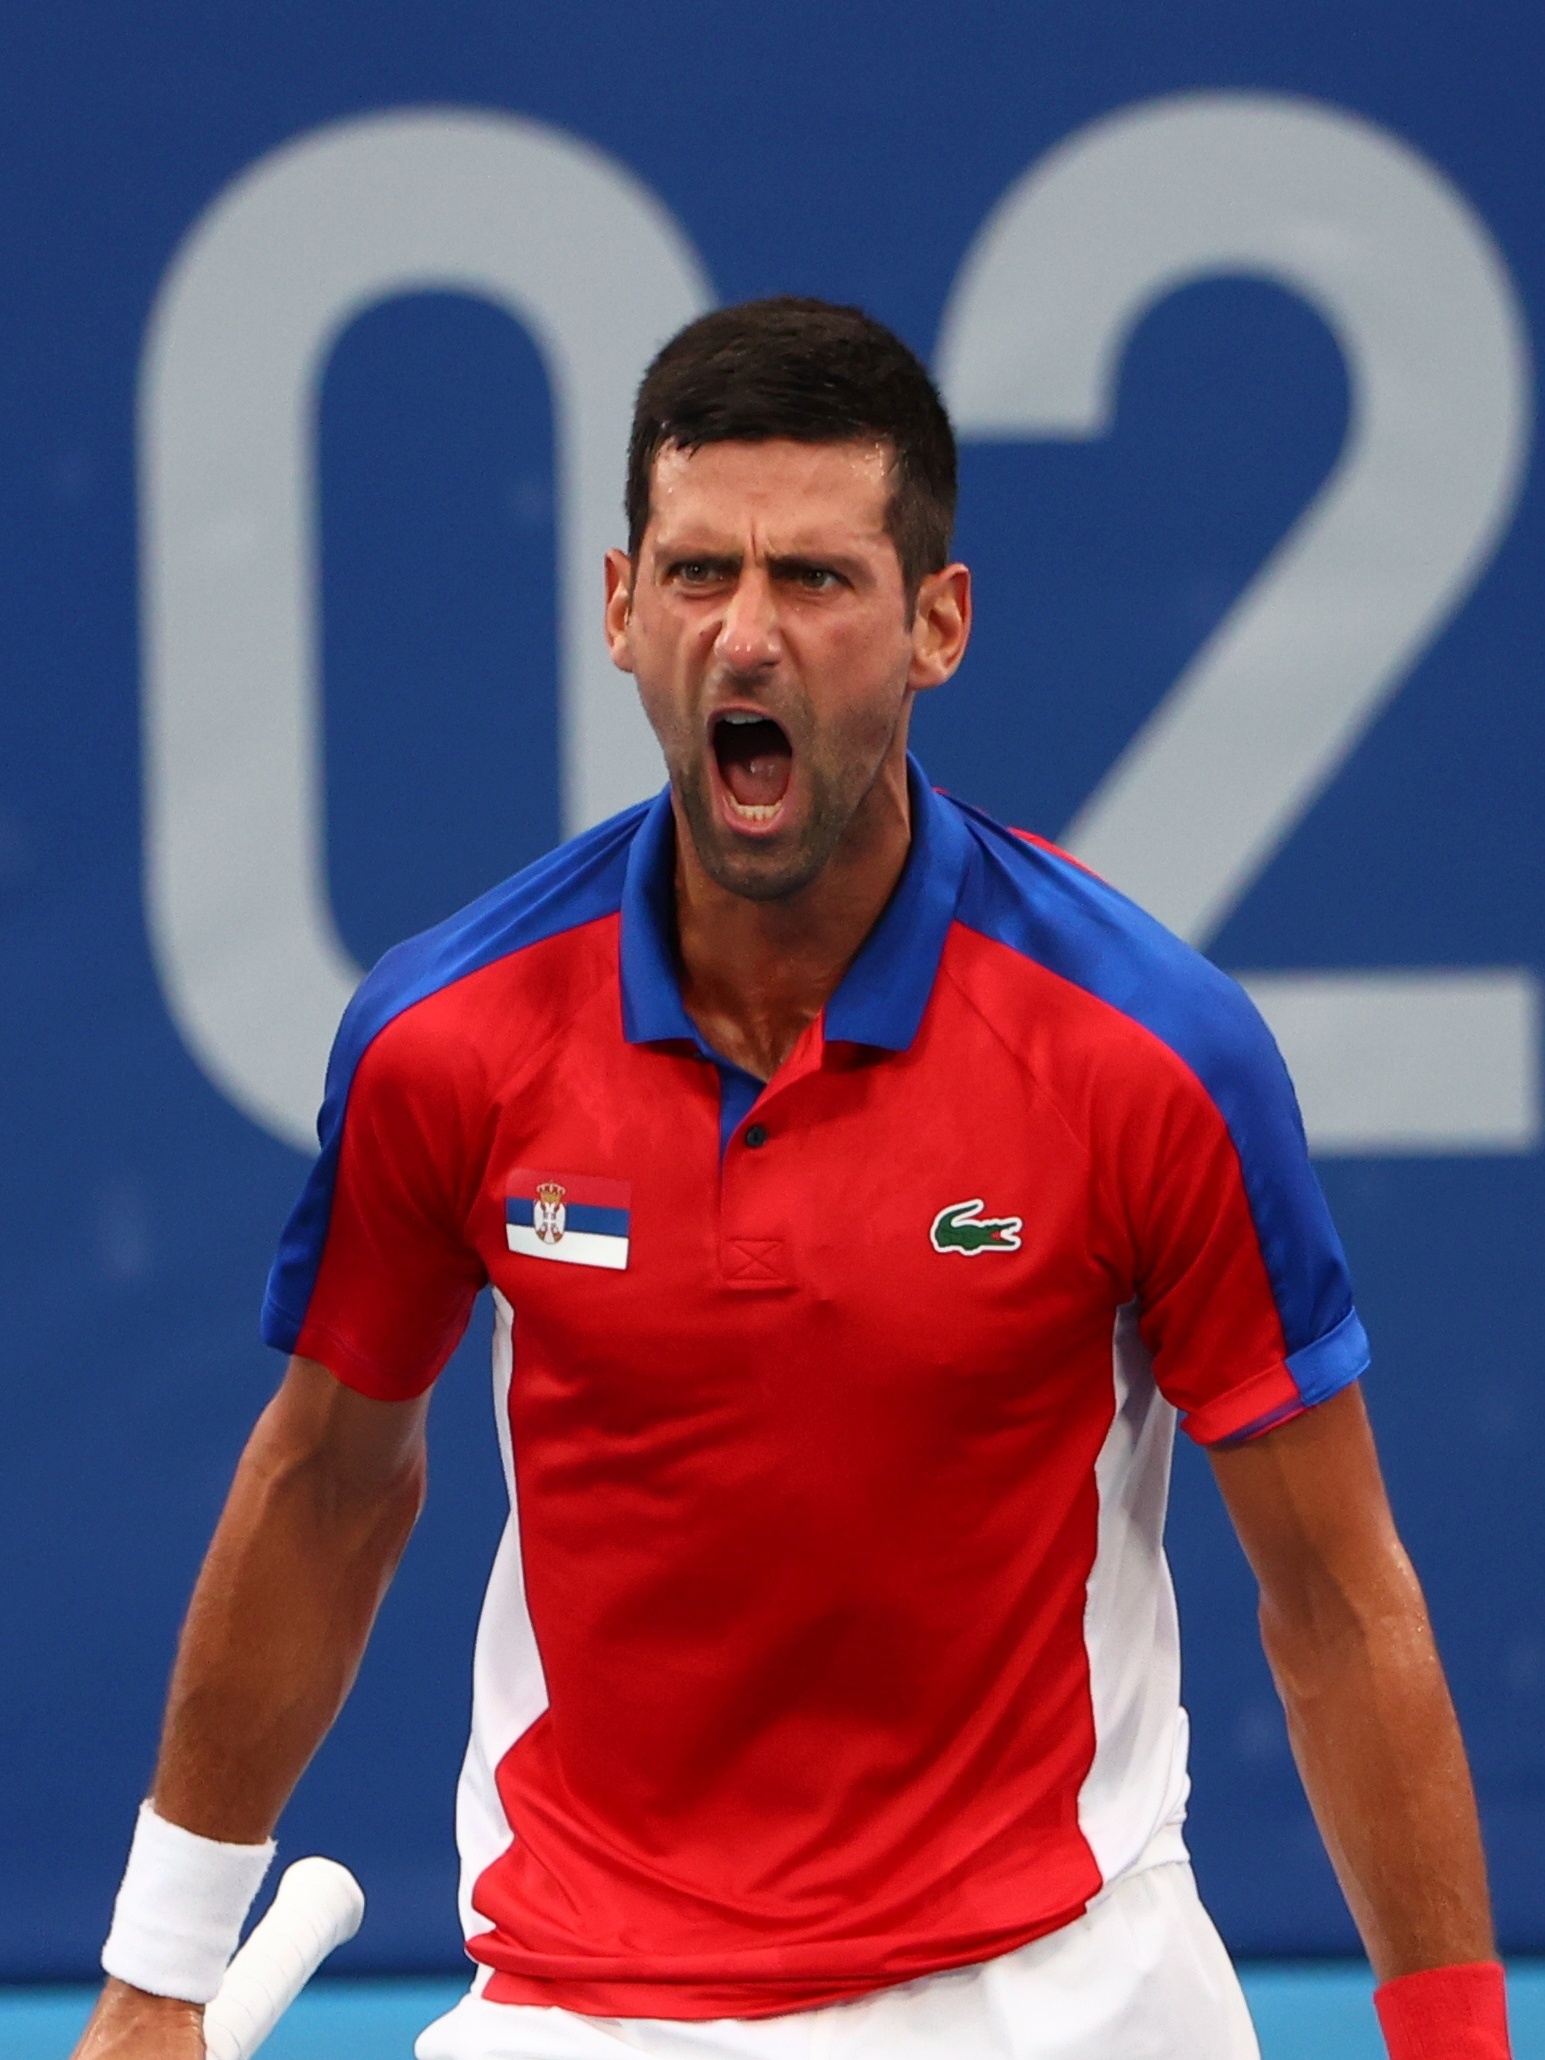 Djokovic confirma que competirá nos Jogos Olímpicos de Tóquio